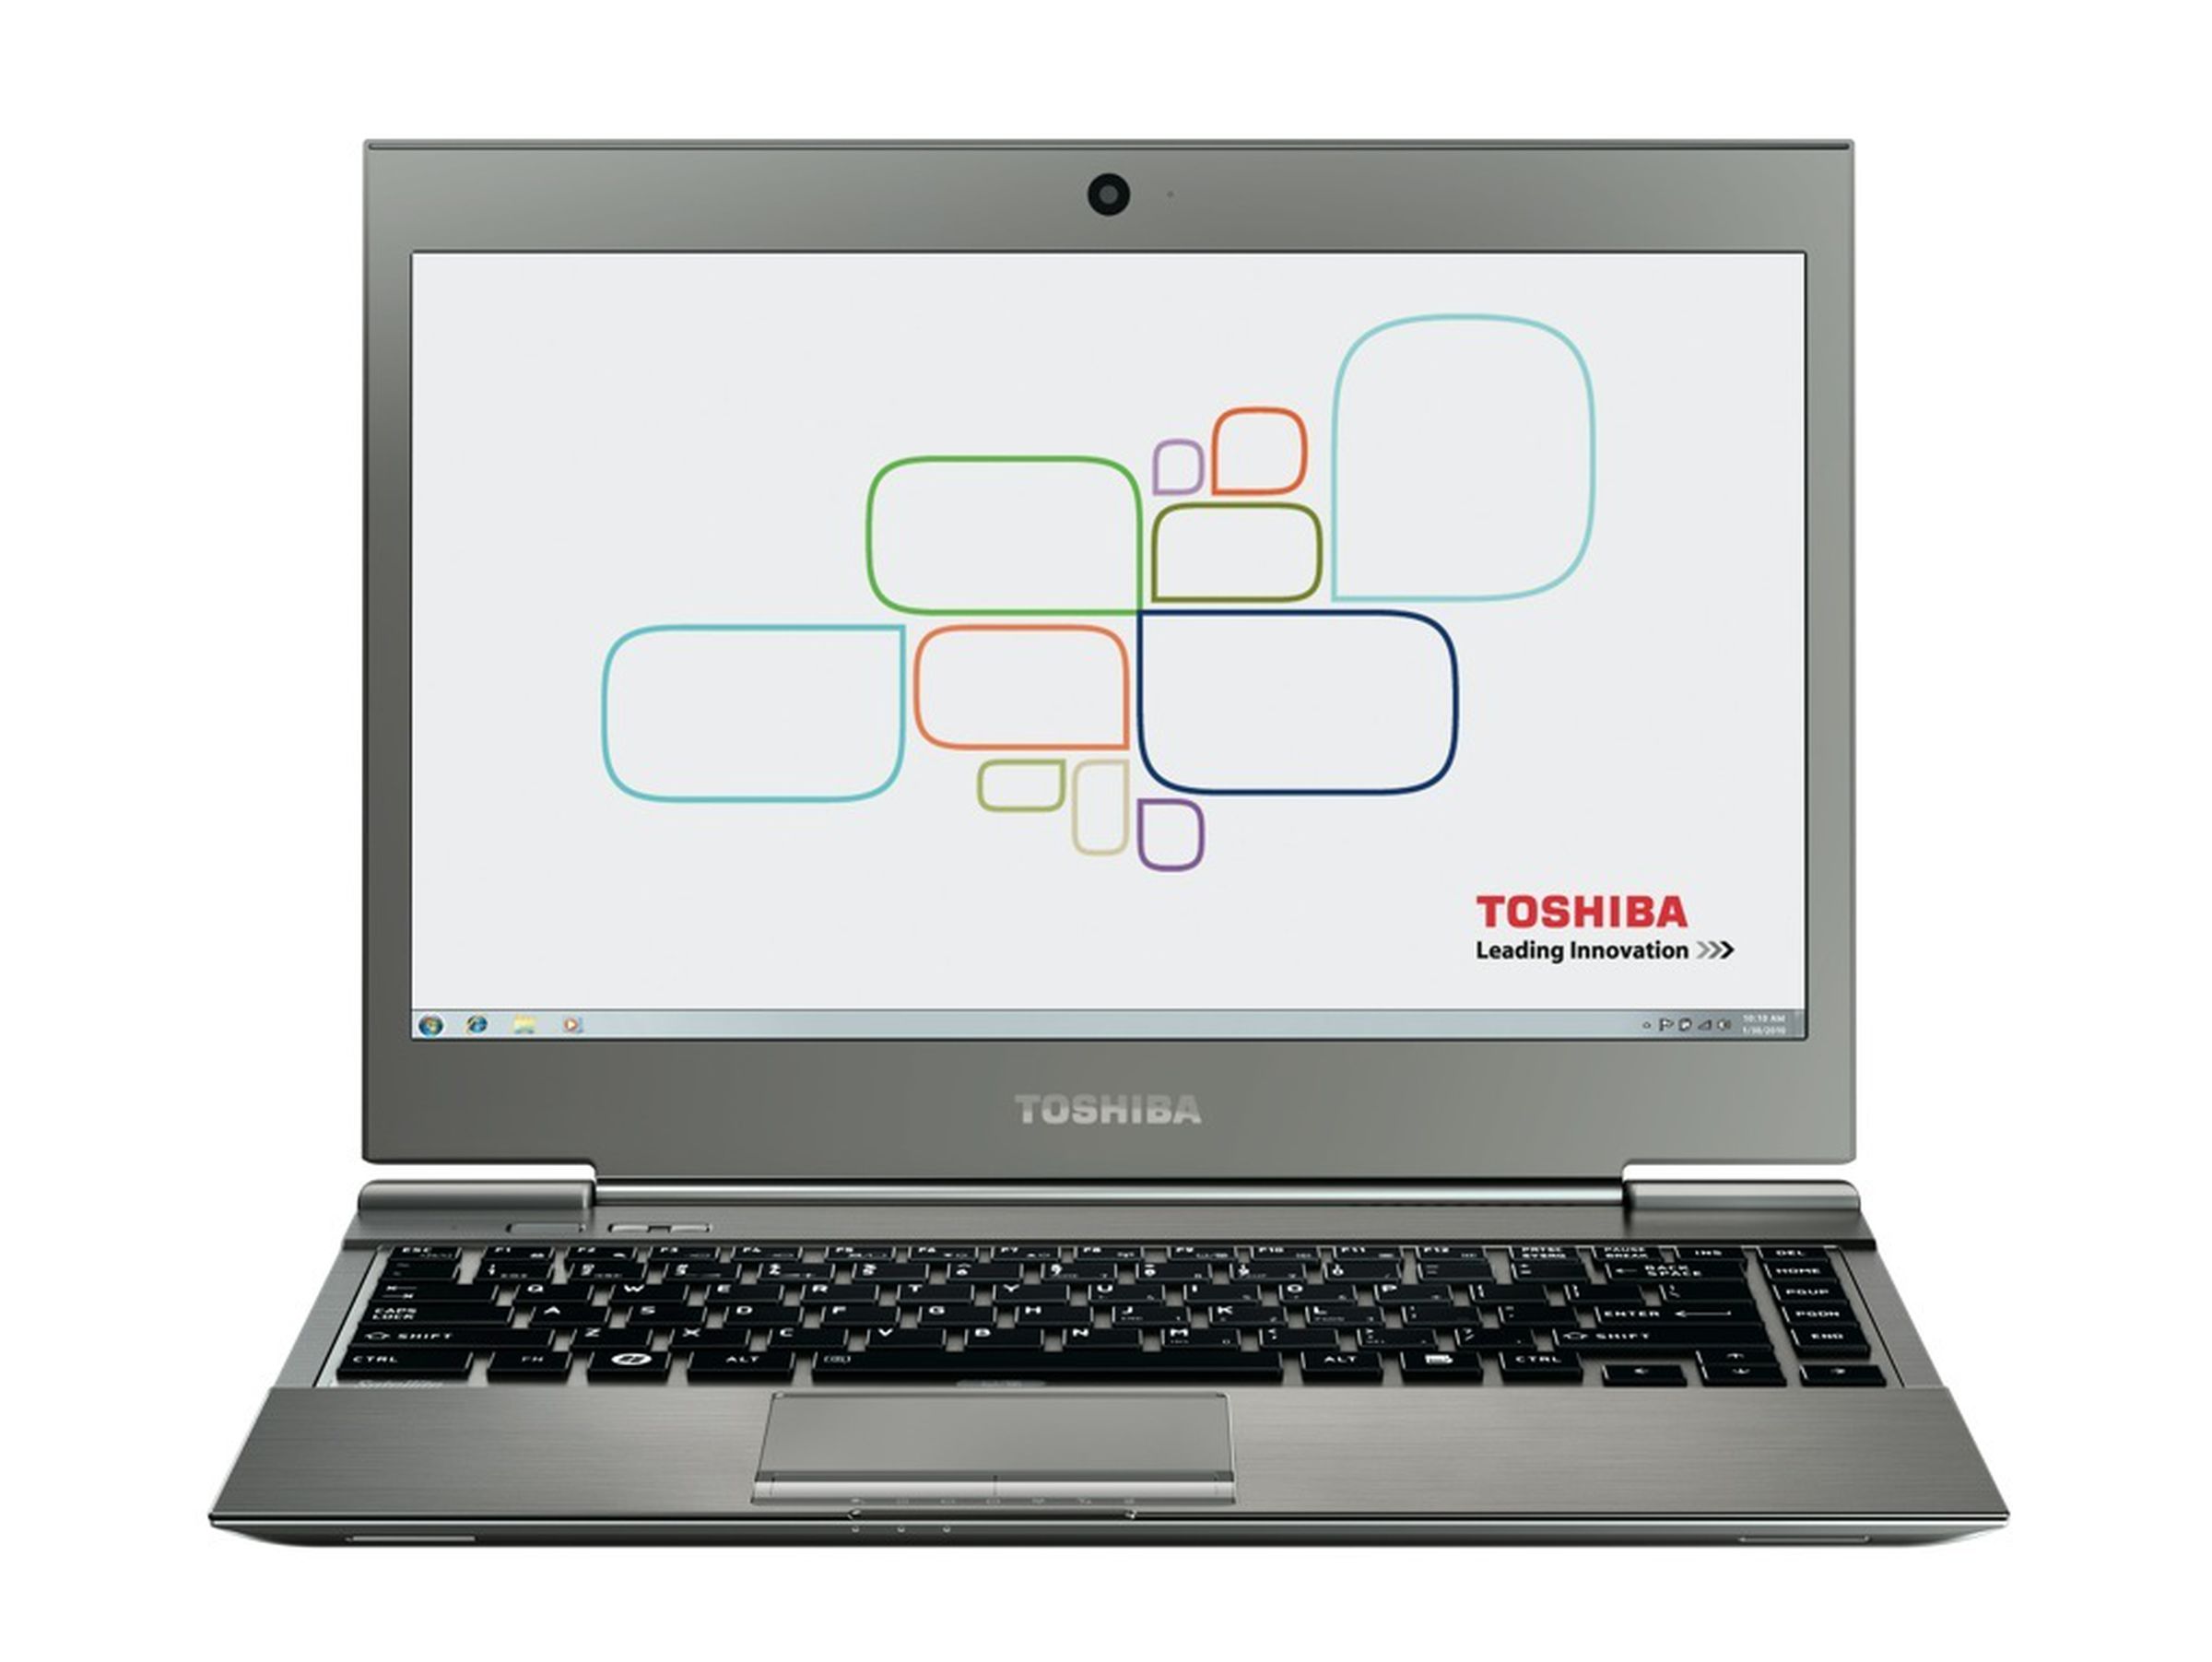 Toshiba Portege Z930 press photos